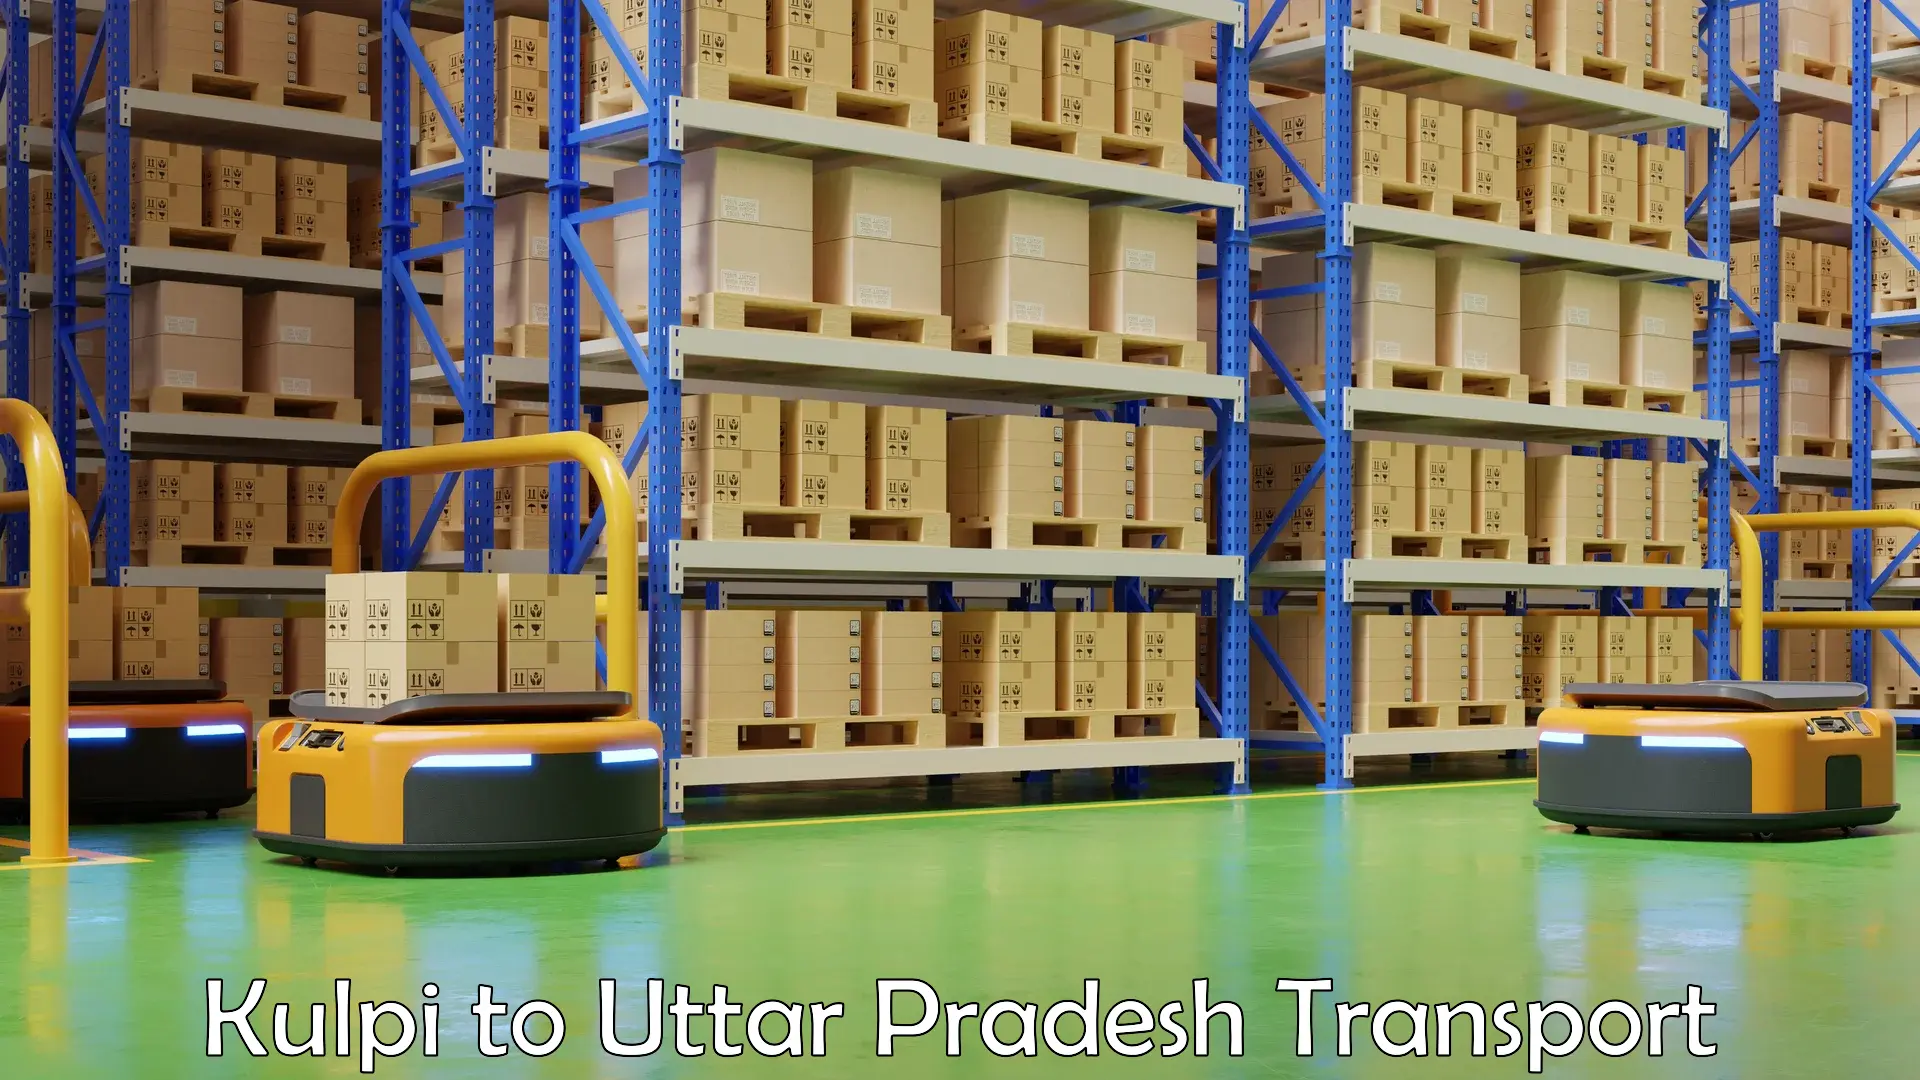 Part load transport service in India Kulpi to Uttar Pradesh